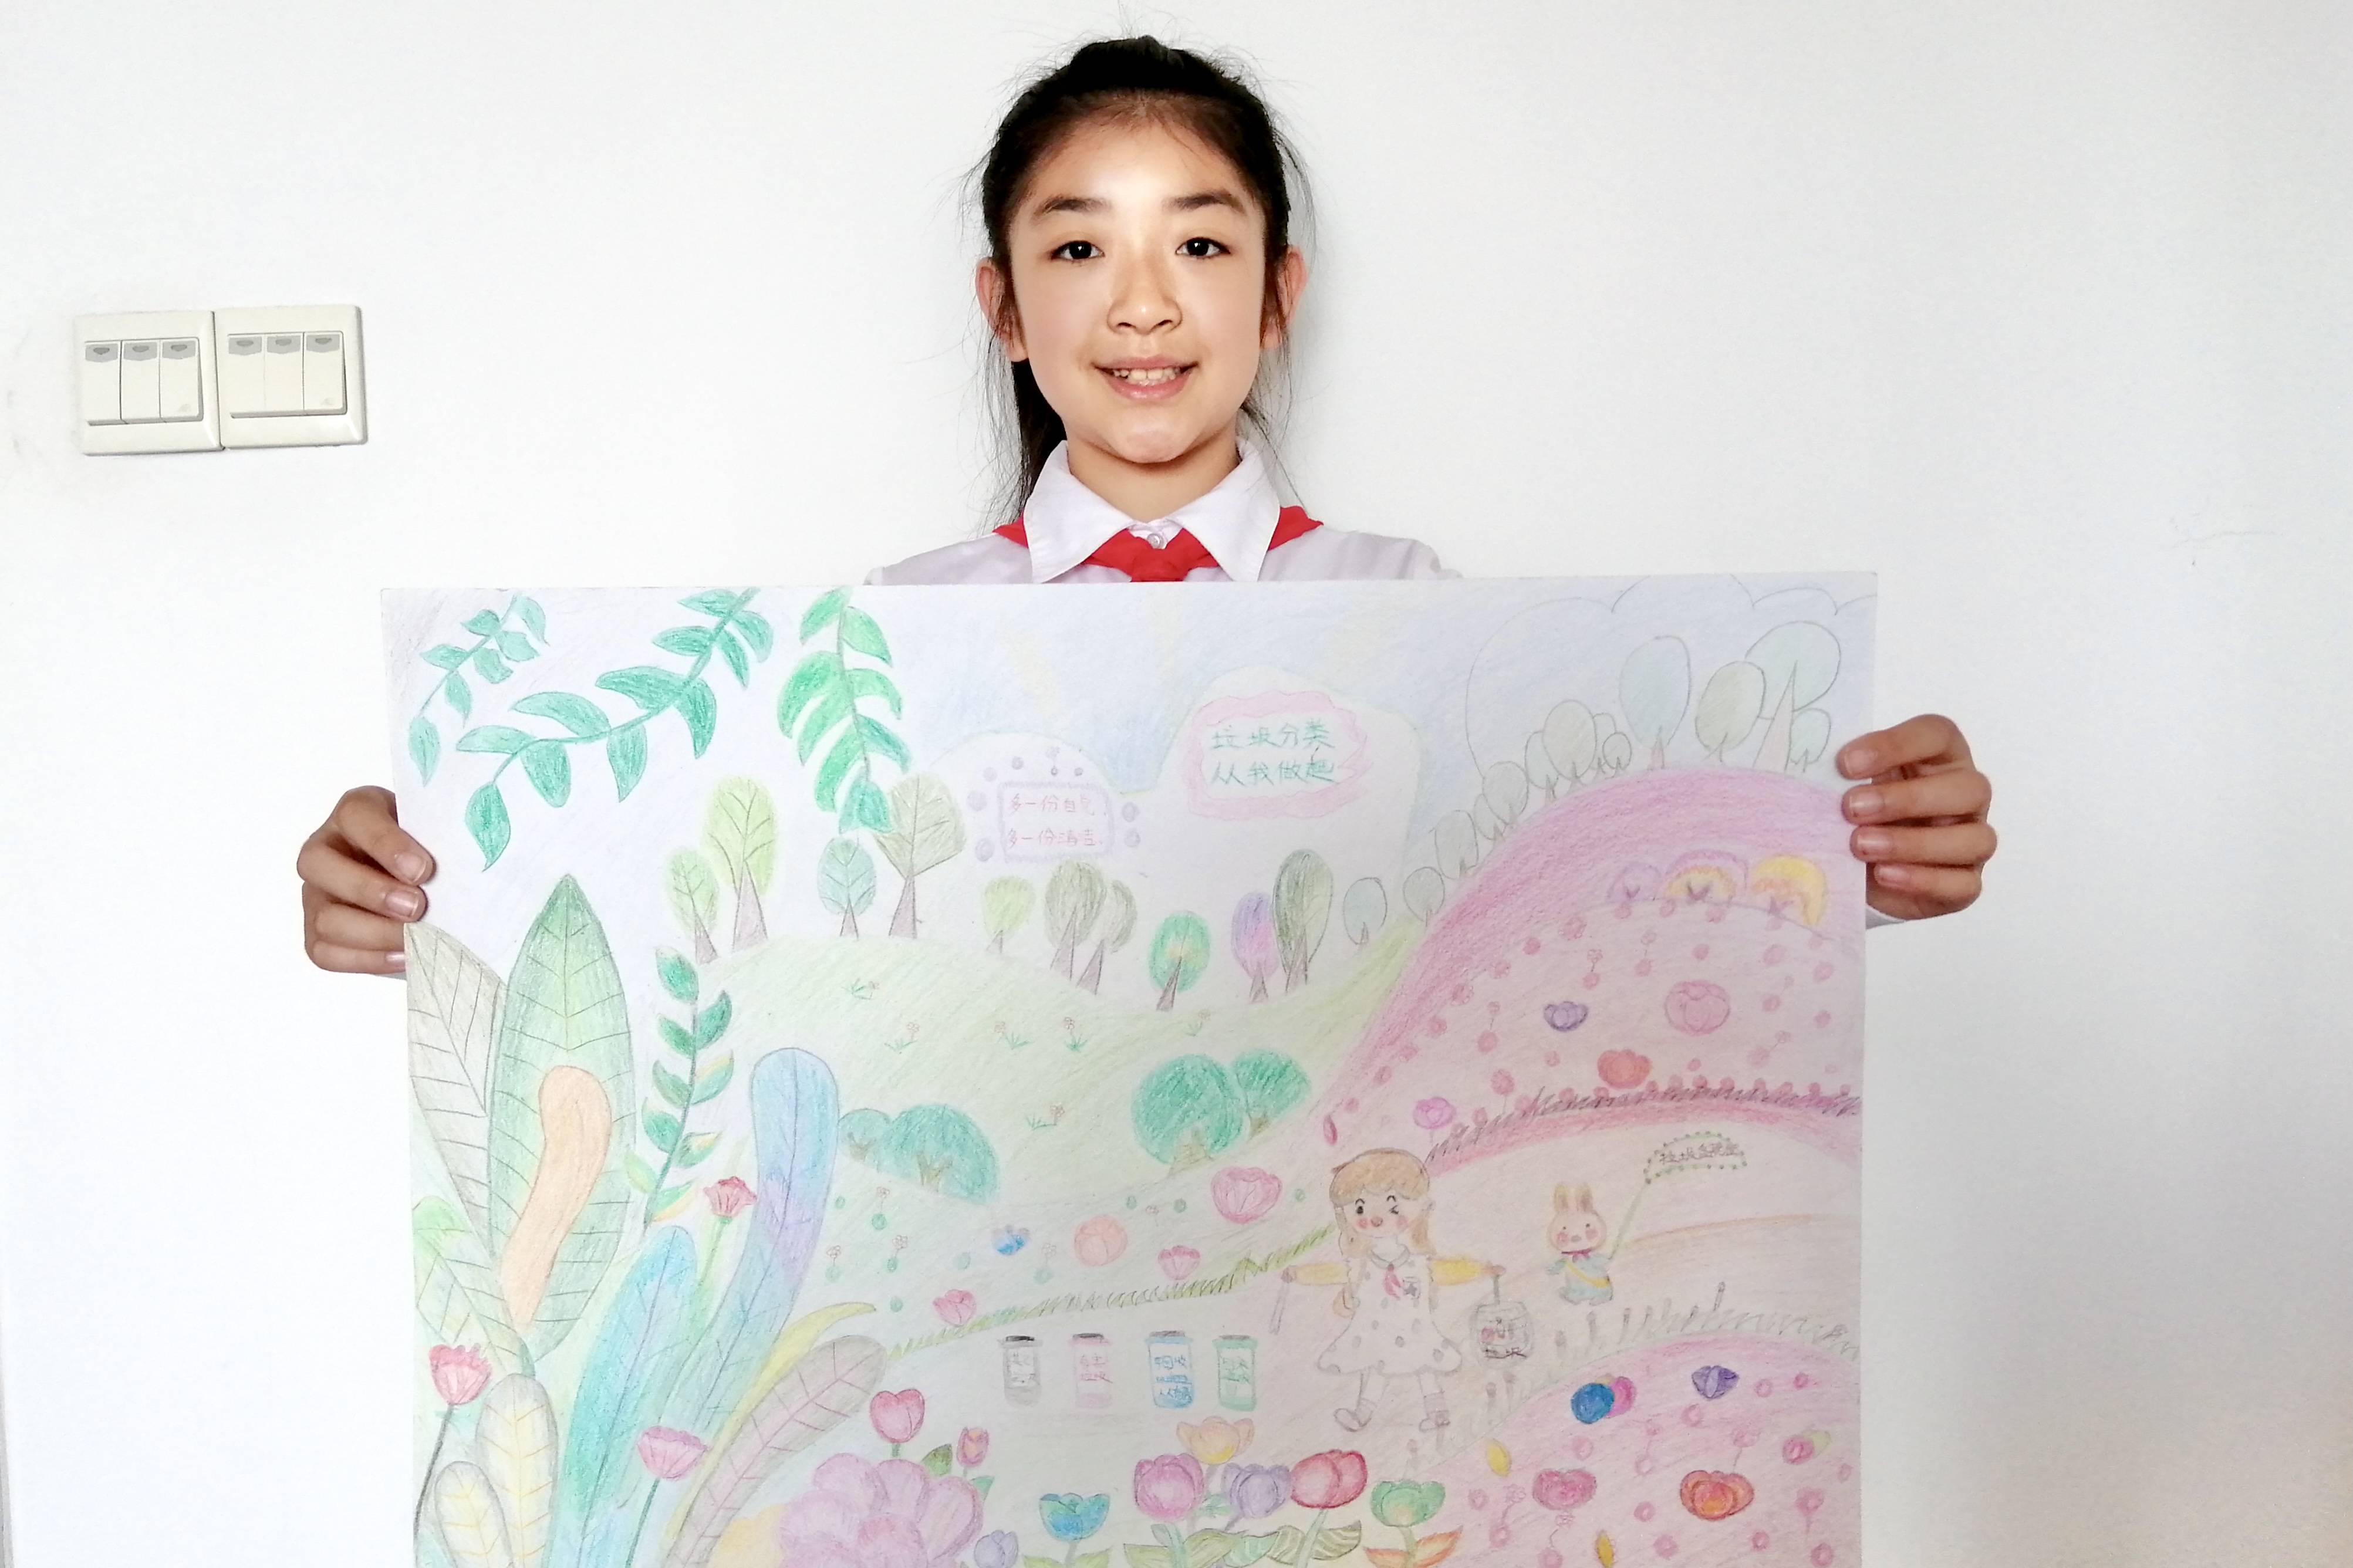 沈阳小学生垃圾分类绘画作品展示2447幅